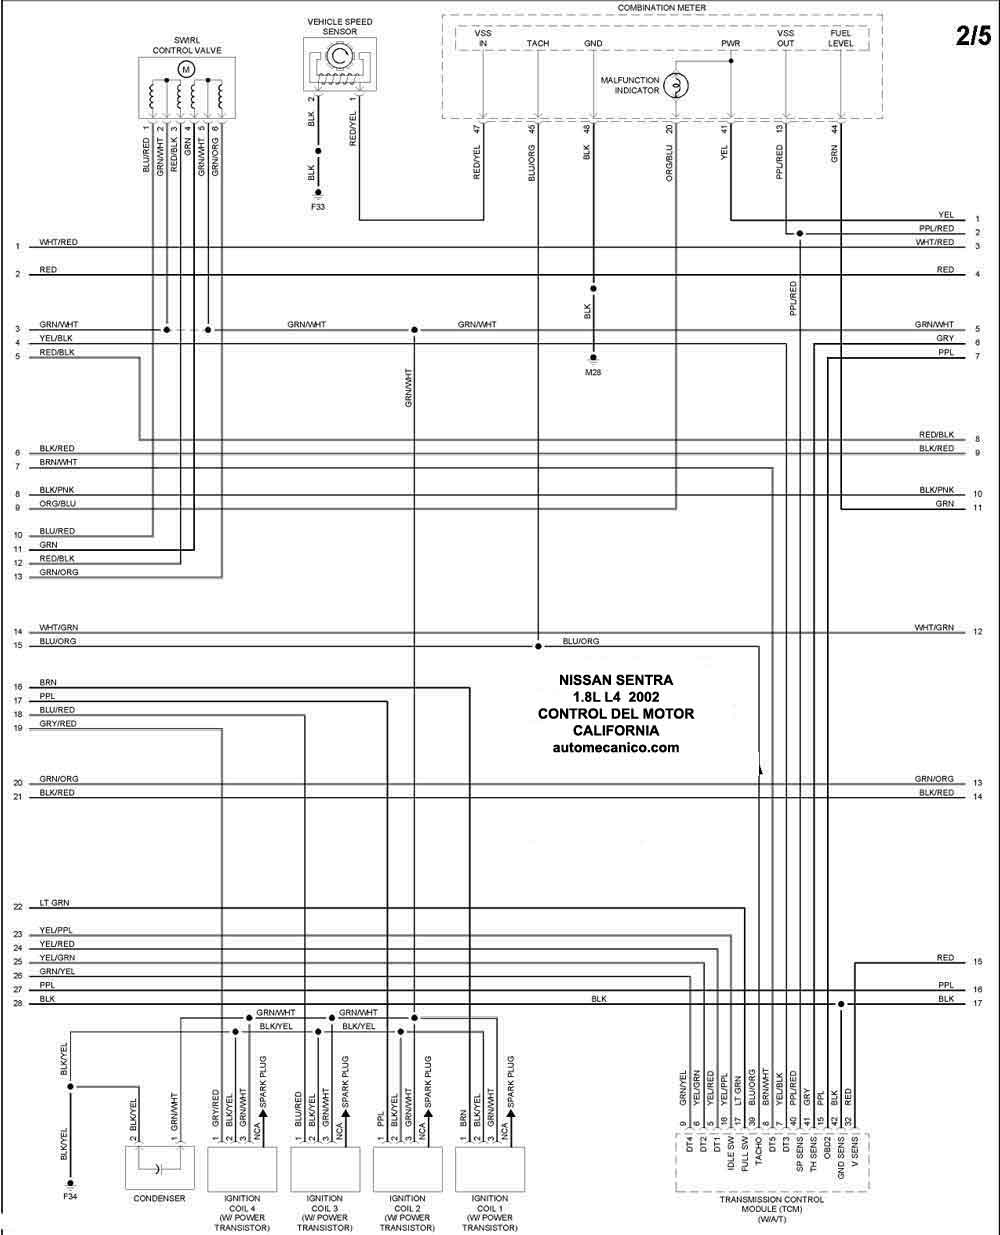 Nissan - Diagramas control del motor 2002 - Graphics - Esquemas | Vehiculos  - Motores - Componentes | Mecanica automotriz